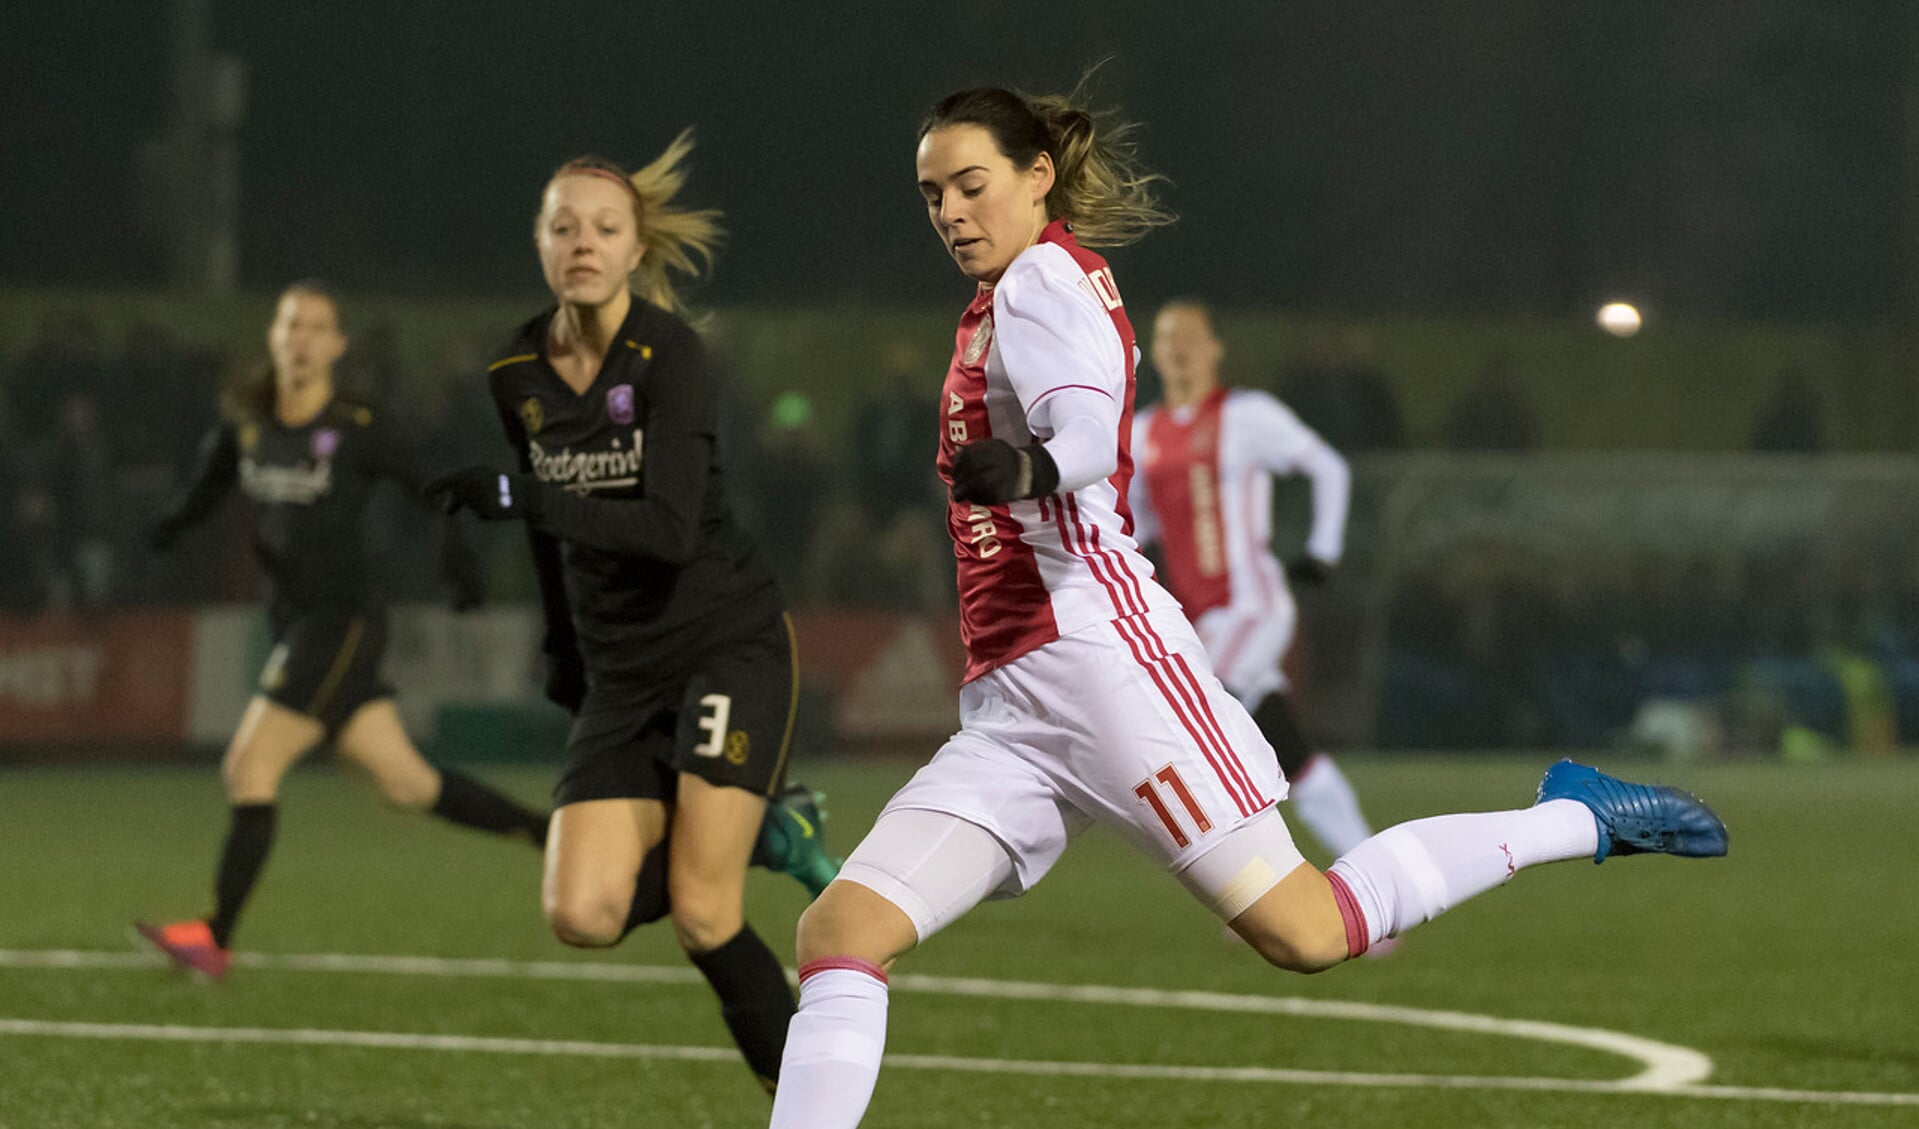 Velddrielse Van den Bighelaar loodst Ajax-vrouwen naar eerste landstitel